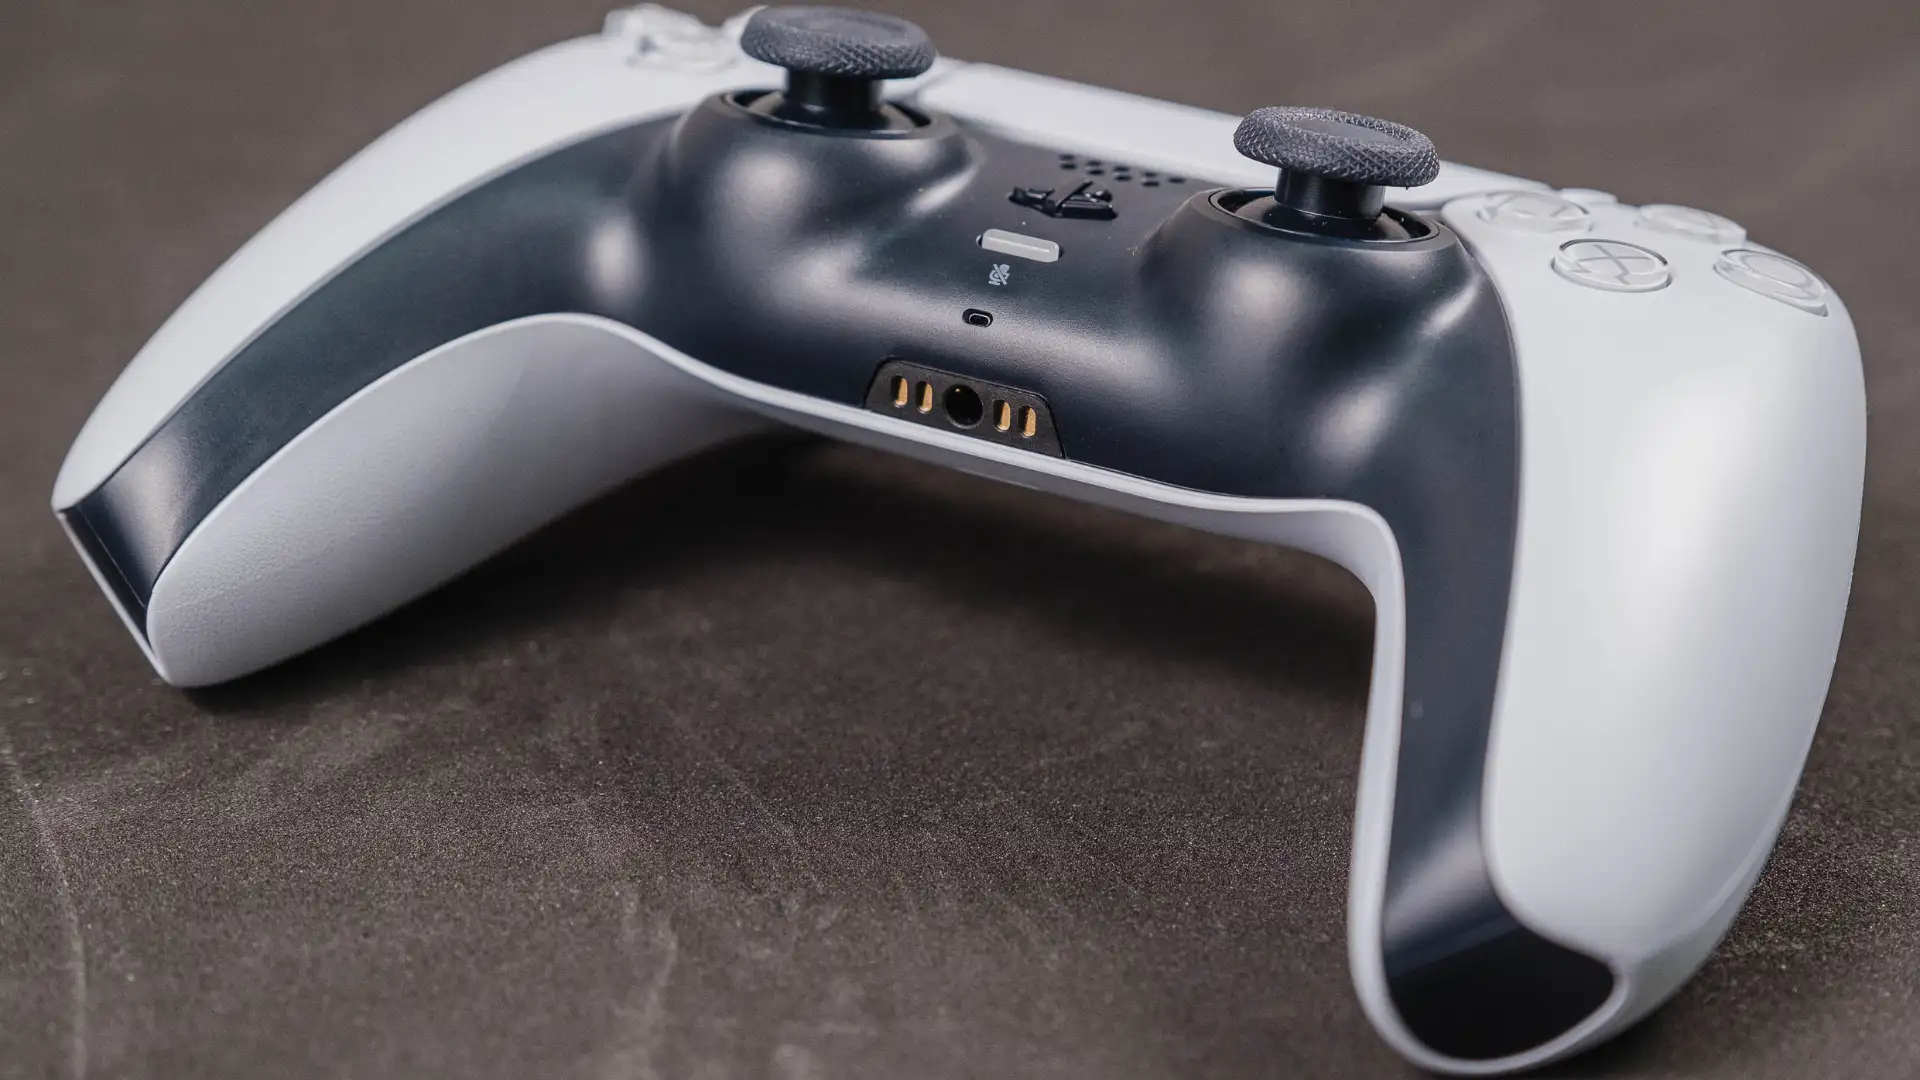 Controle sem fio DualSense, O novo e inovador controle do PS5